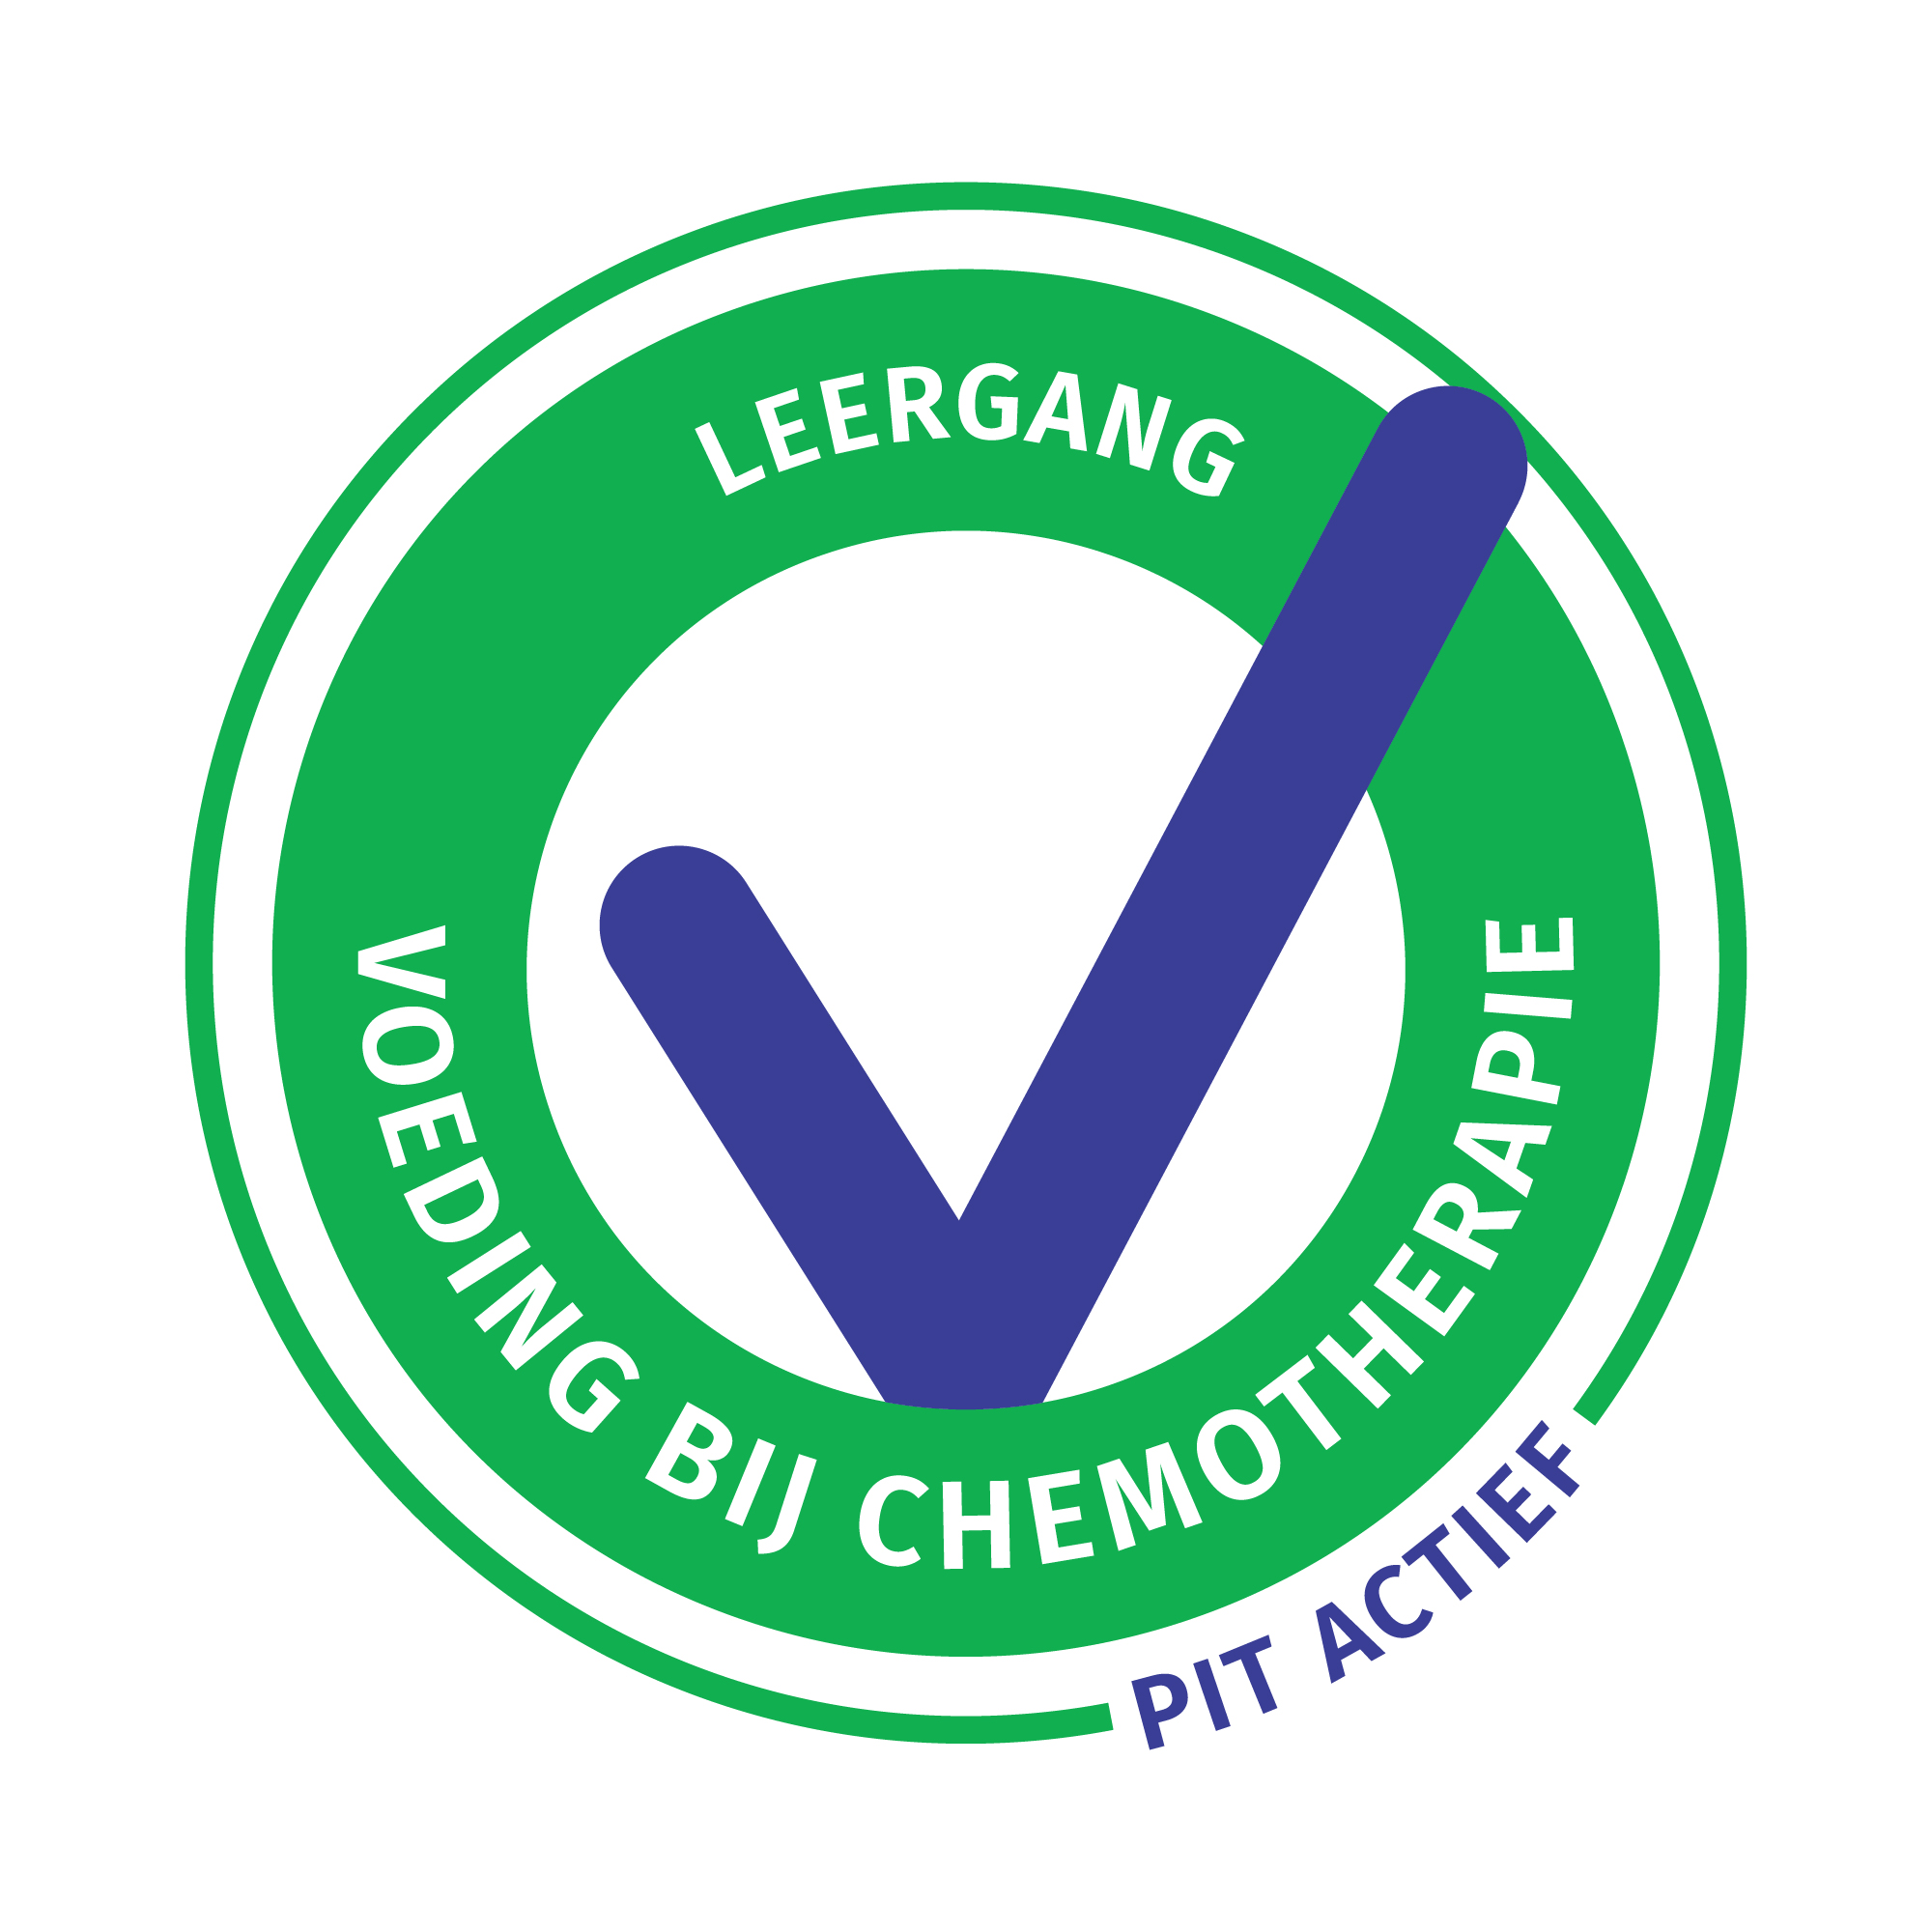 1a.kleur_logo_pit_actief_scholing_chemo